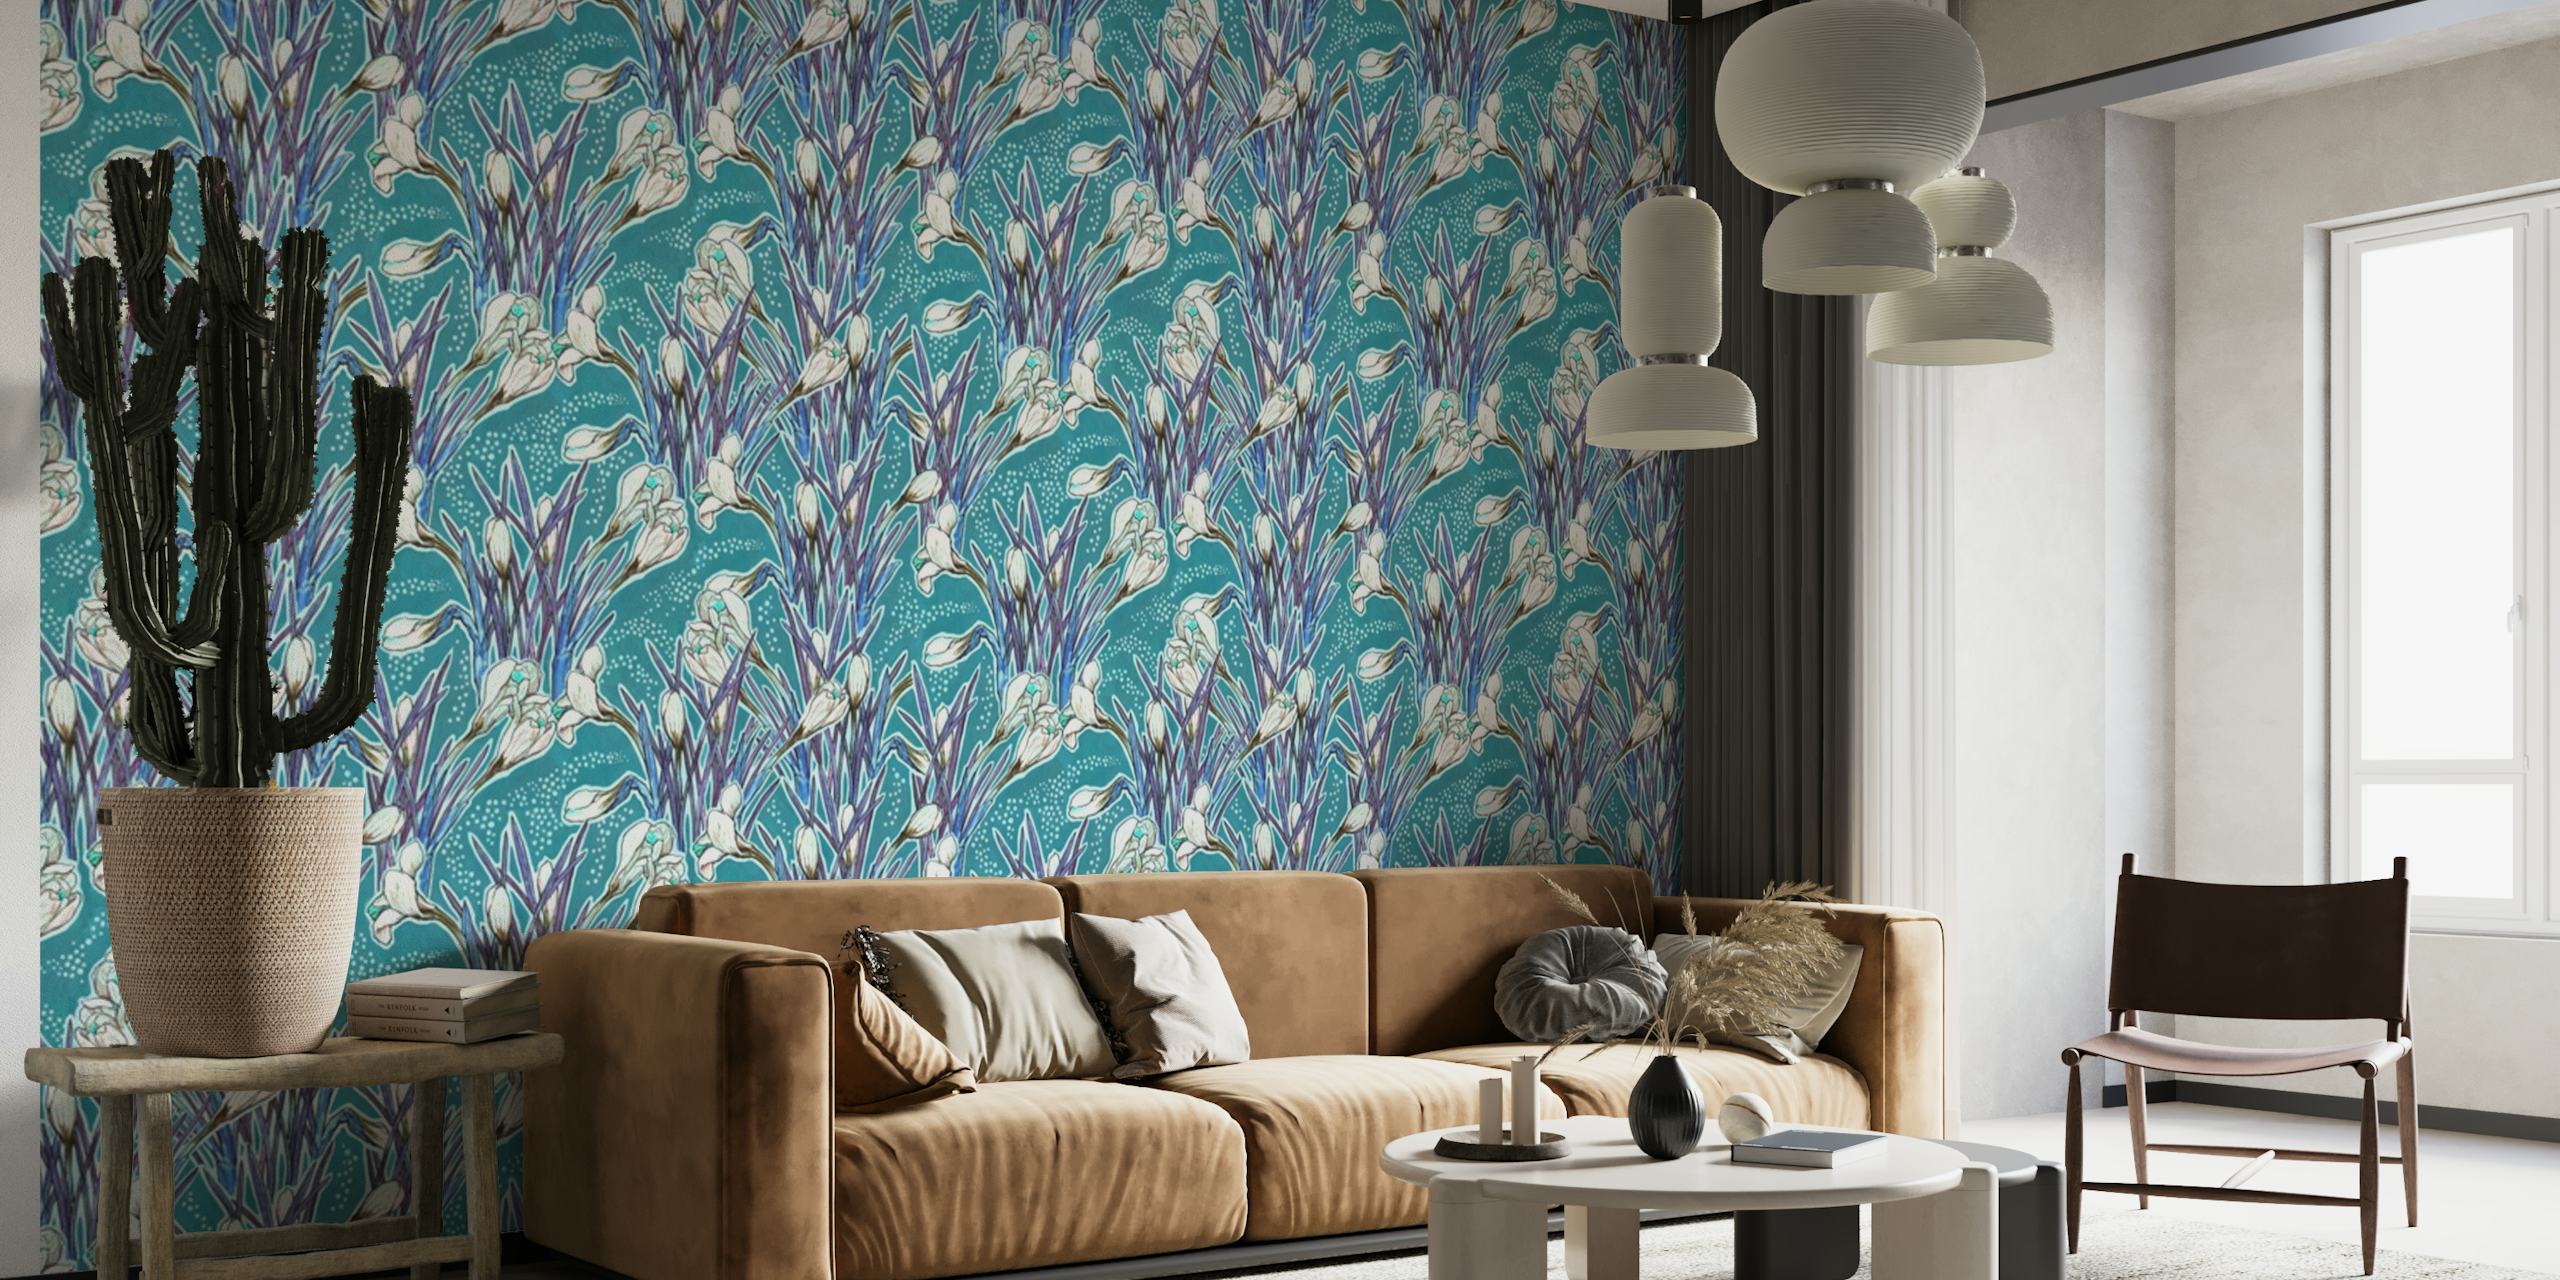 Mural de parede turquesa com padrão de açafrão e desenho floral simétrico em happywall.com